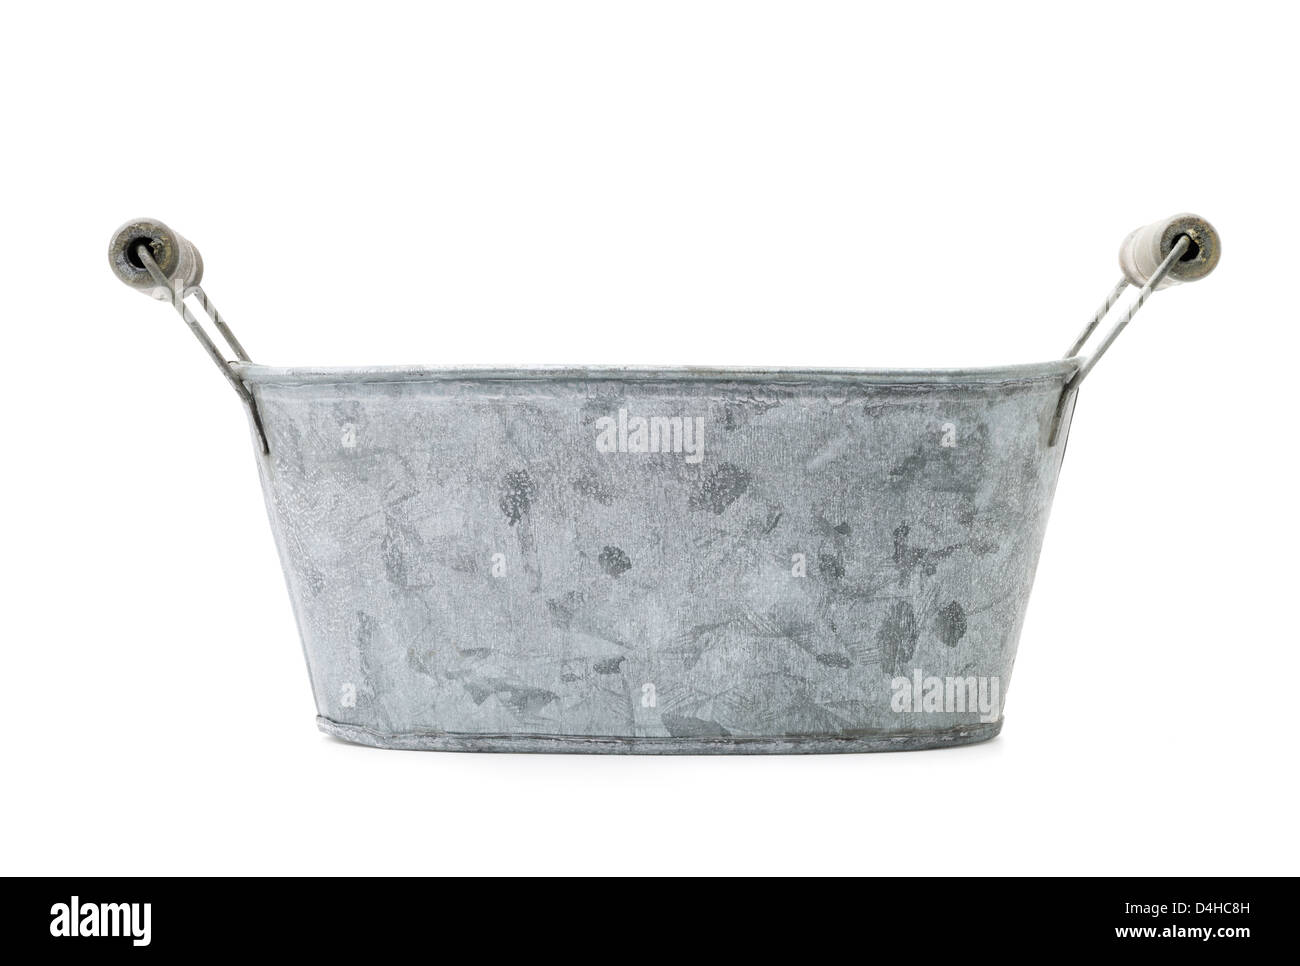 Haushaltswaren: alt, Zeit getragen, rostige verzinkte Waschschüssel, isoliert auf weißem Hintergrund Stockfoto